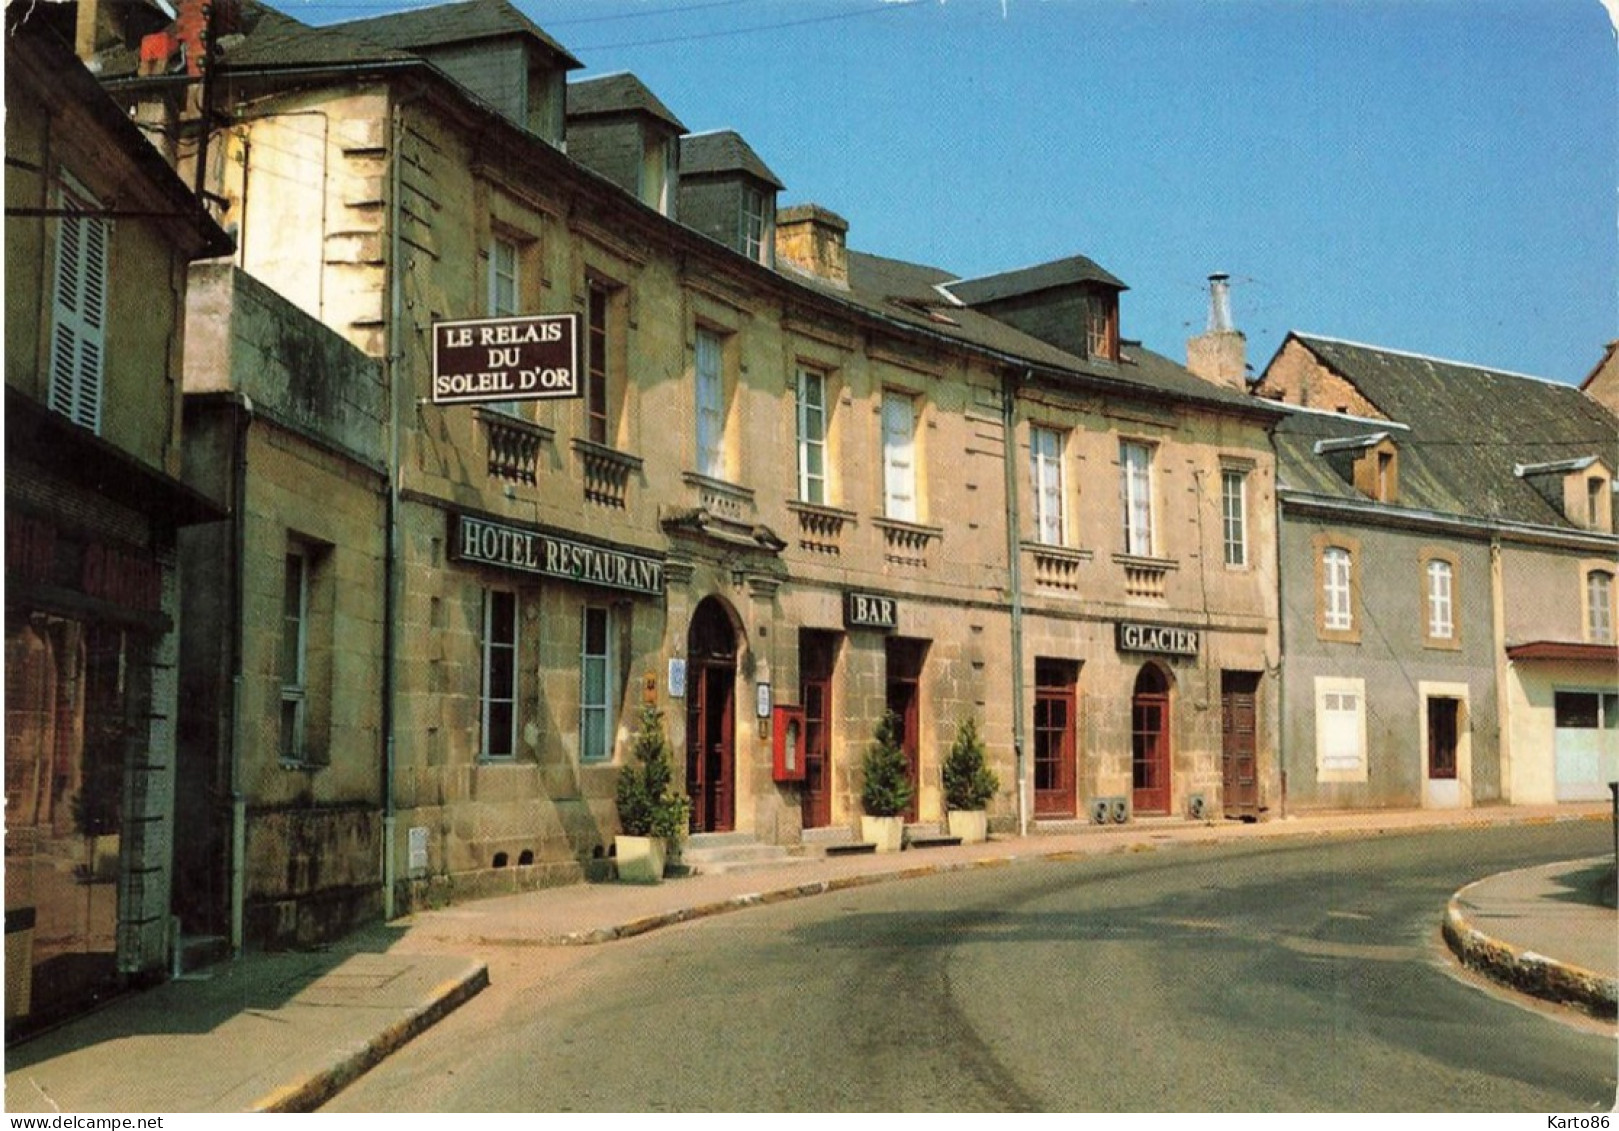 Montignac * La Rue Principale Du Village * Hôtel Restaurant Du Soleil D'or , Bar Glacier - Montignac-sur-Vézère